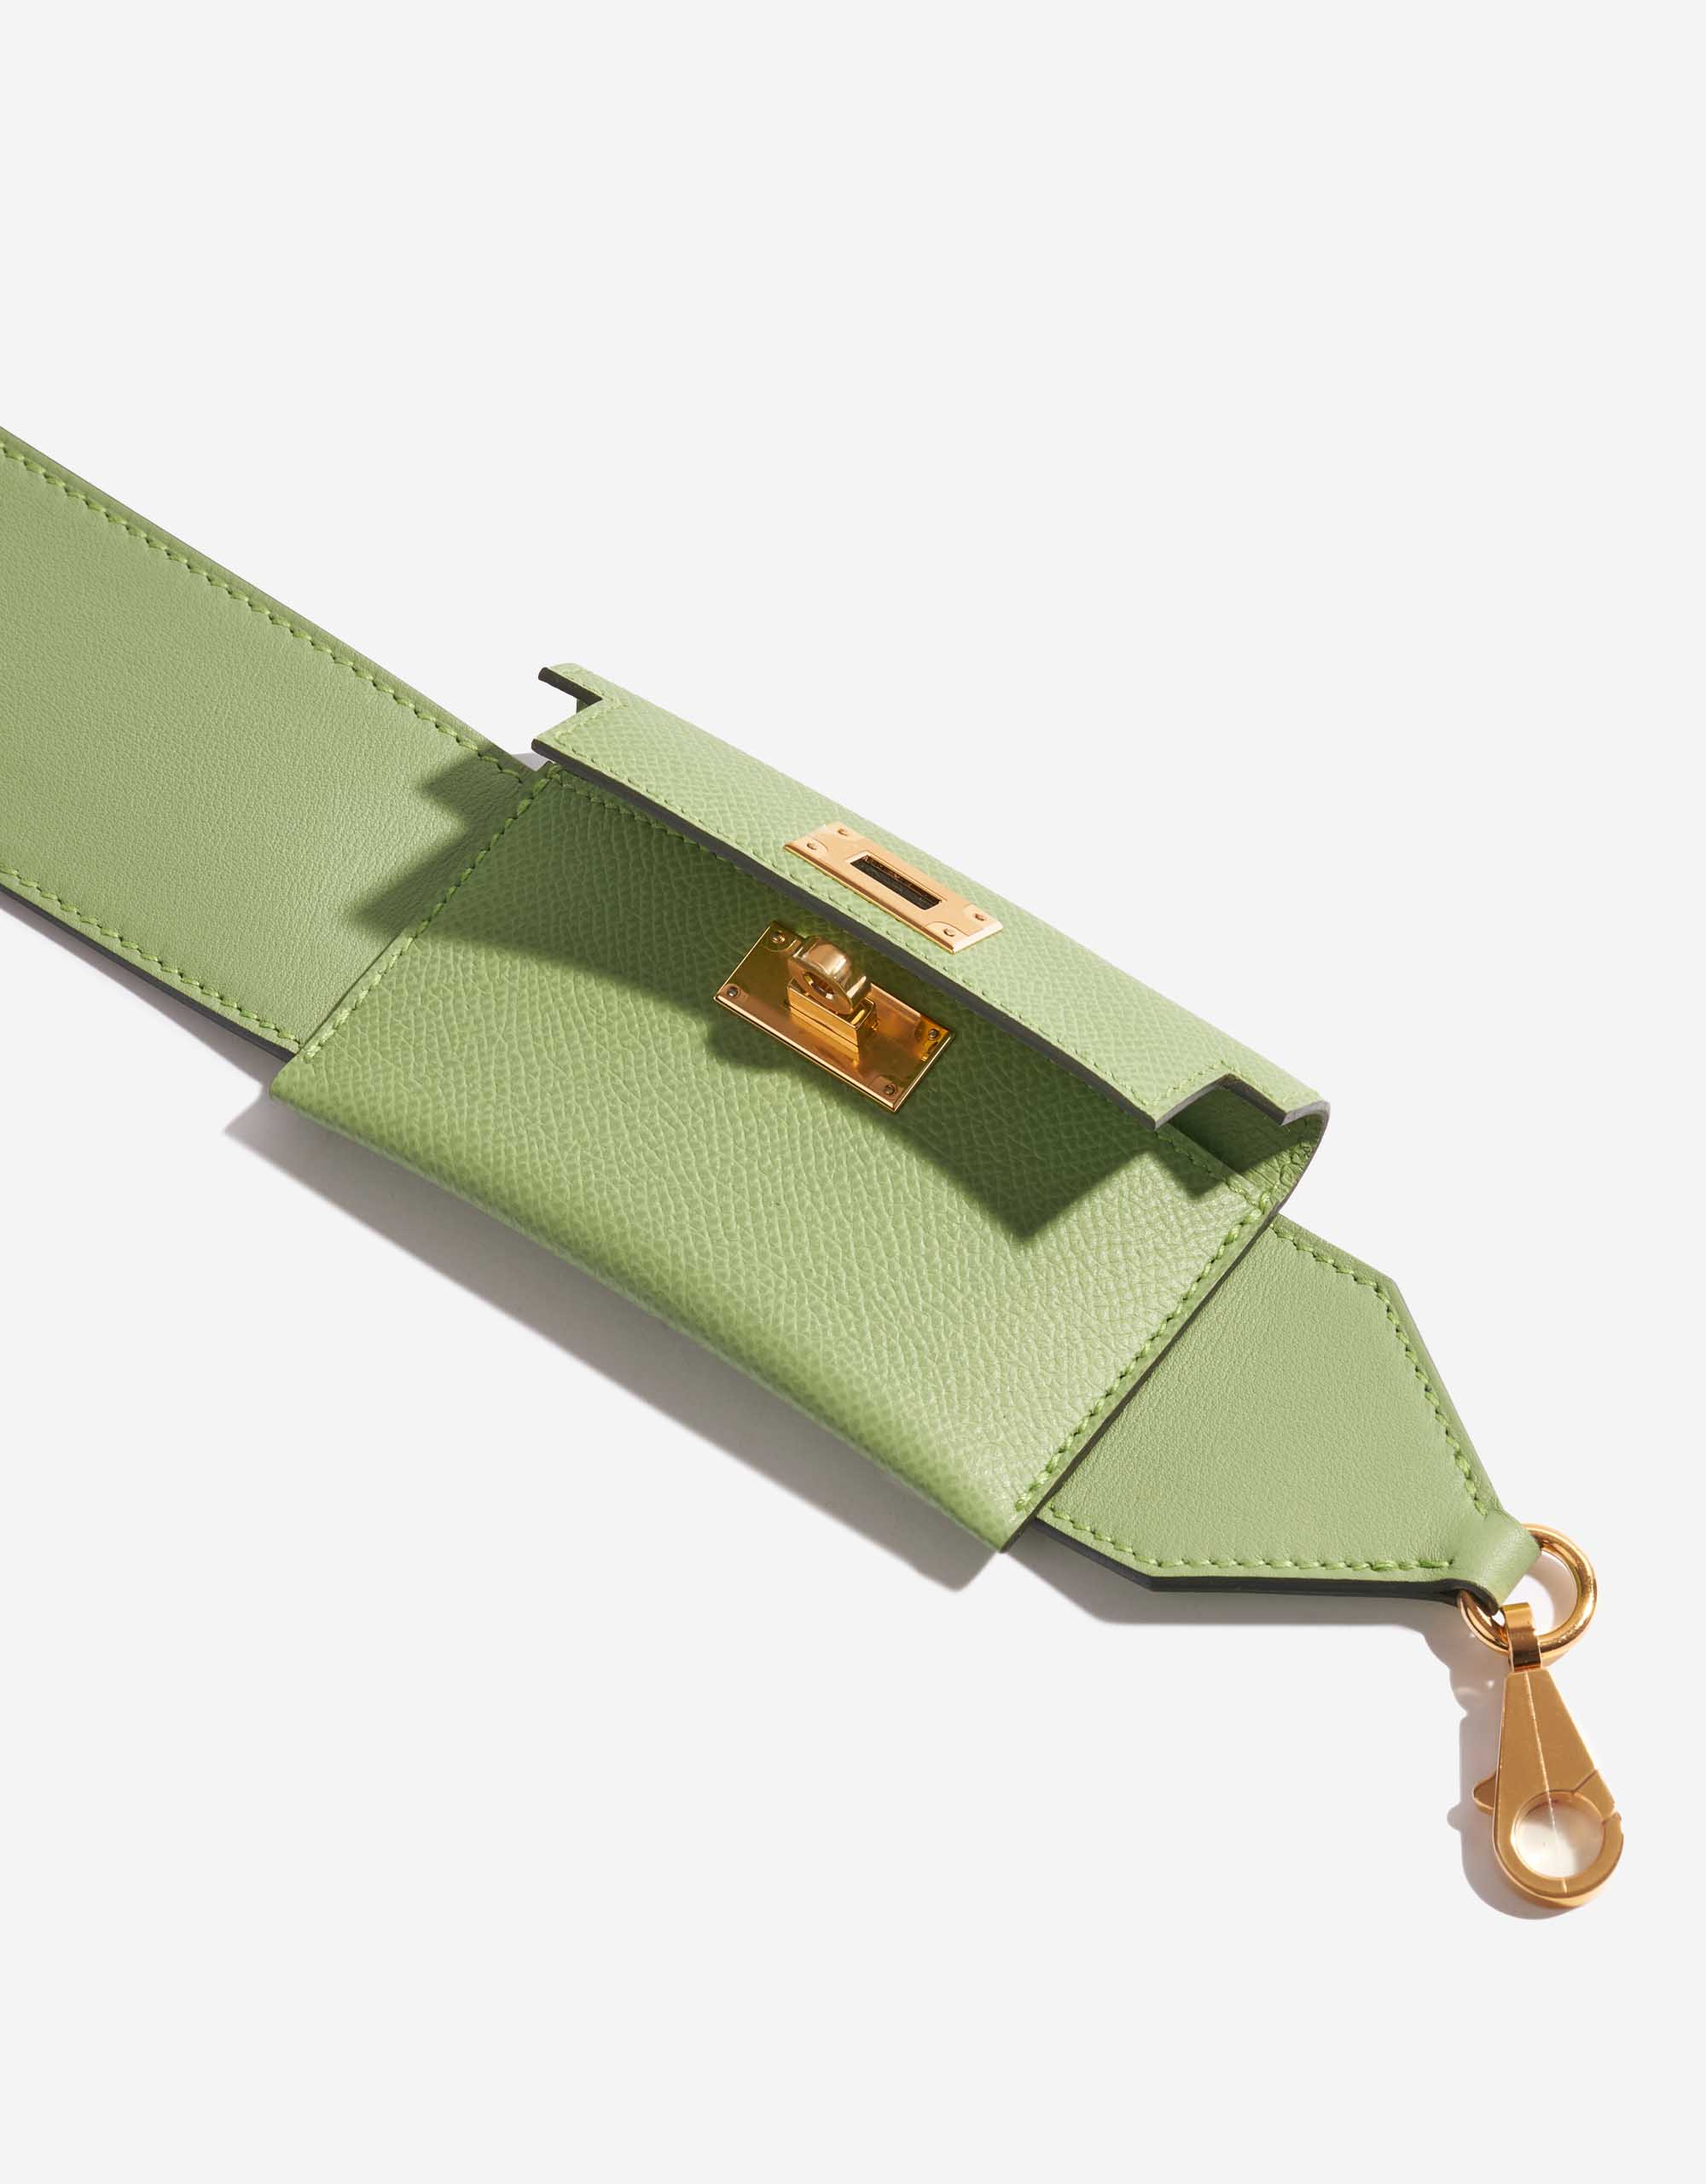 Westcloset - New kelly pocket bag strap